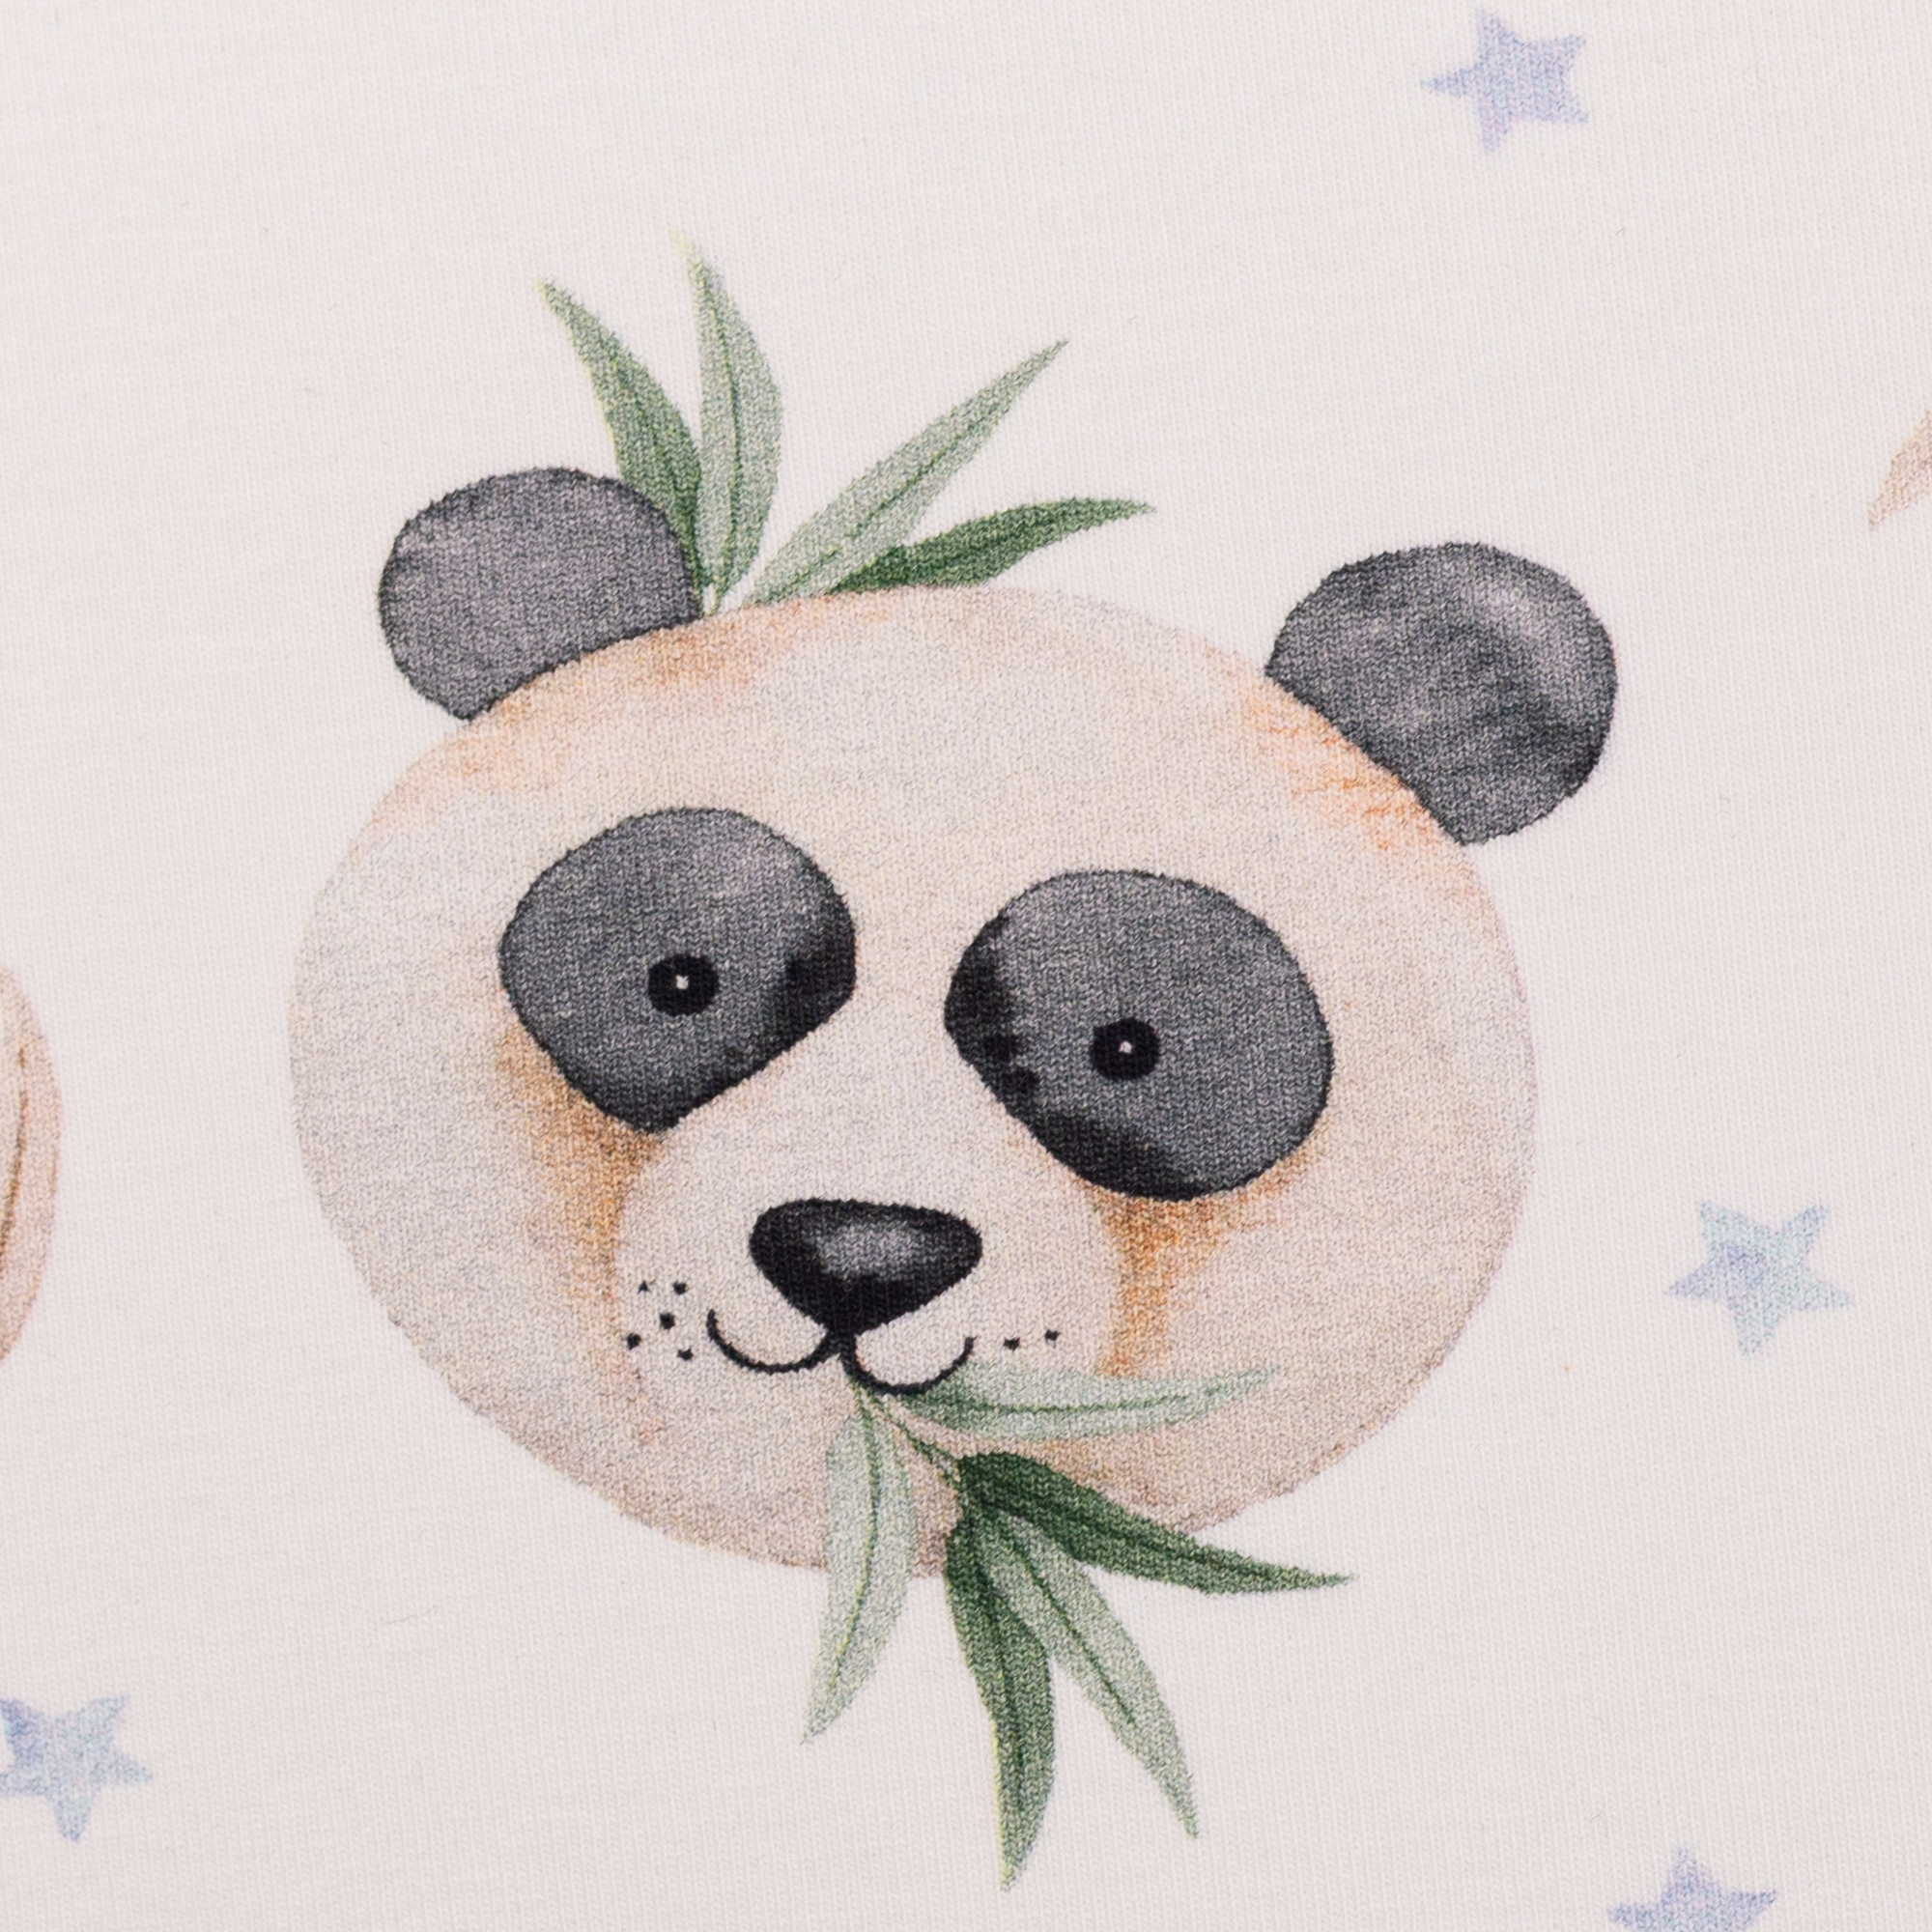 Stoffpaket Panda mit Pflanzen und Sternen (Paket 3)